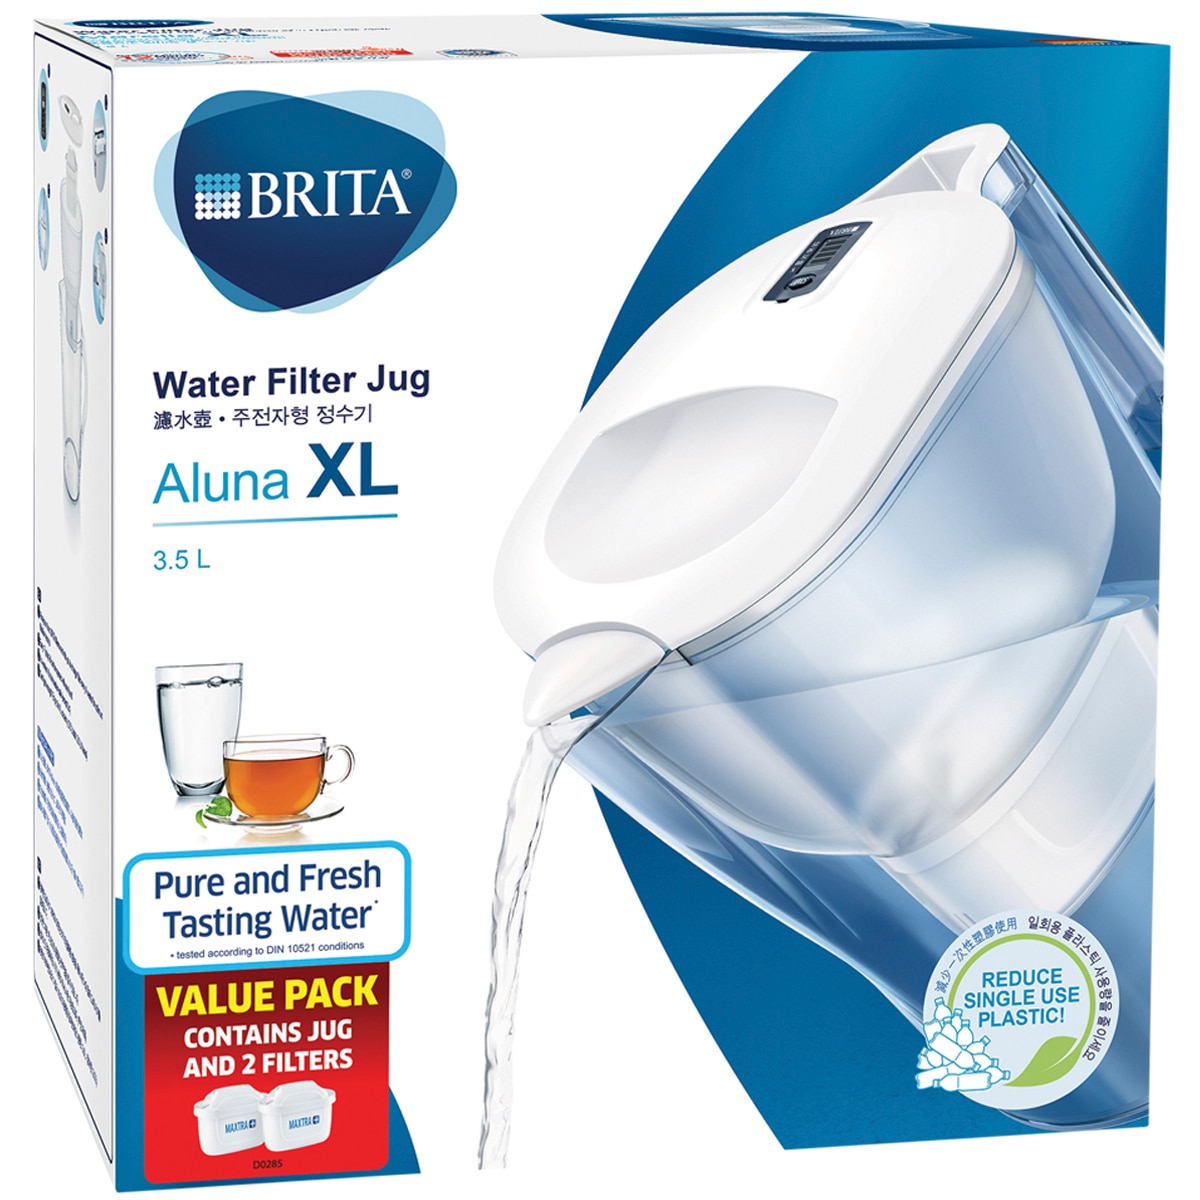 Brita Aluna XL Water Filter Jug 3.5L with 2 Filters